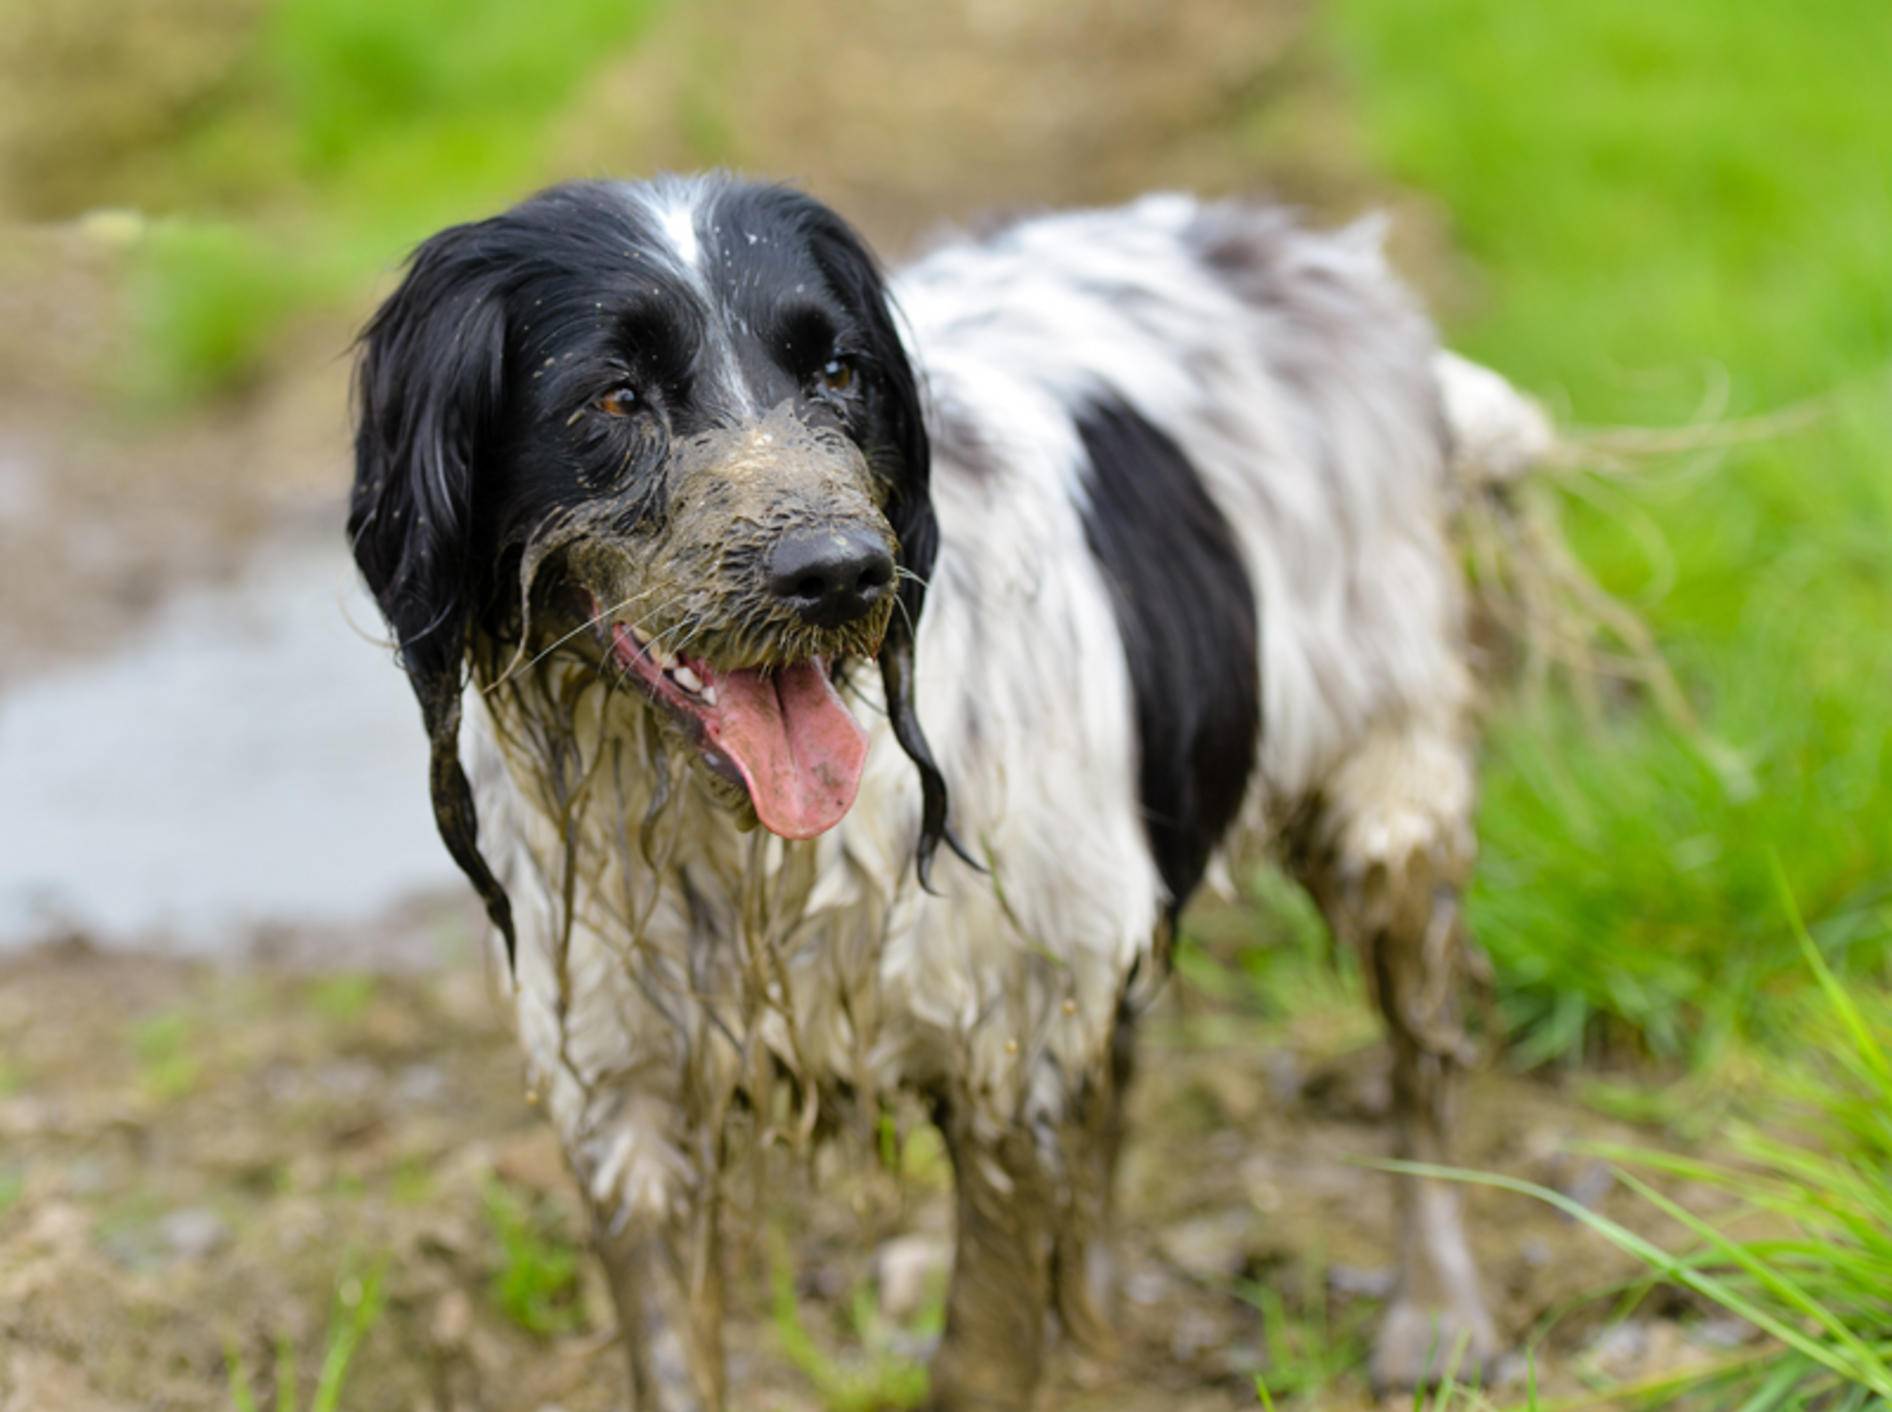 Dieser Hund braucht gleich ein schönes Bad – Shutterstock / Richard Chaff